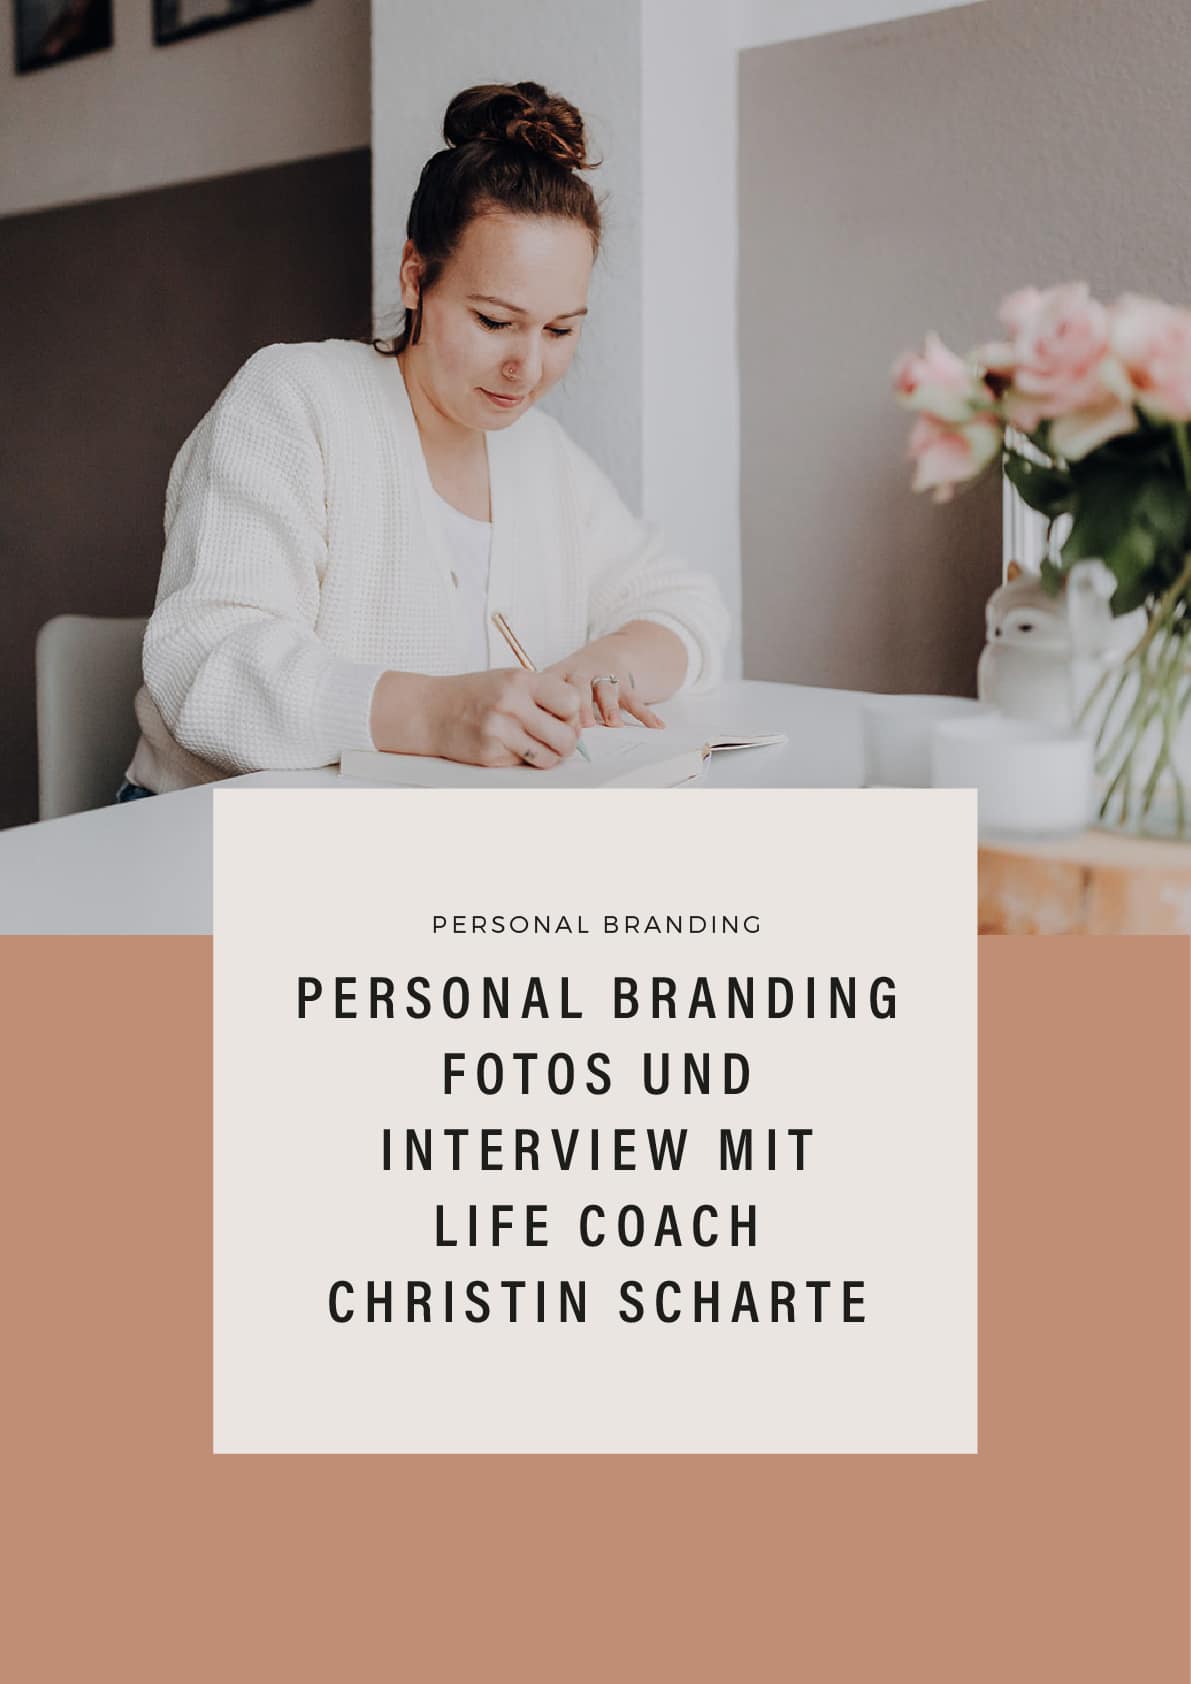 Personal Branding Fotos und Interview mit Life Coach Christin Scharte - Business Fotos Leipzig